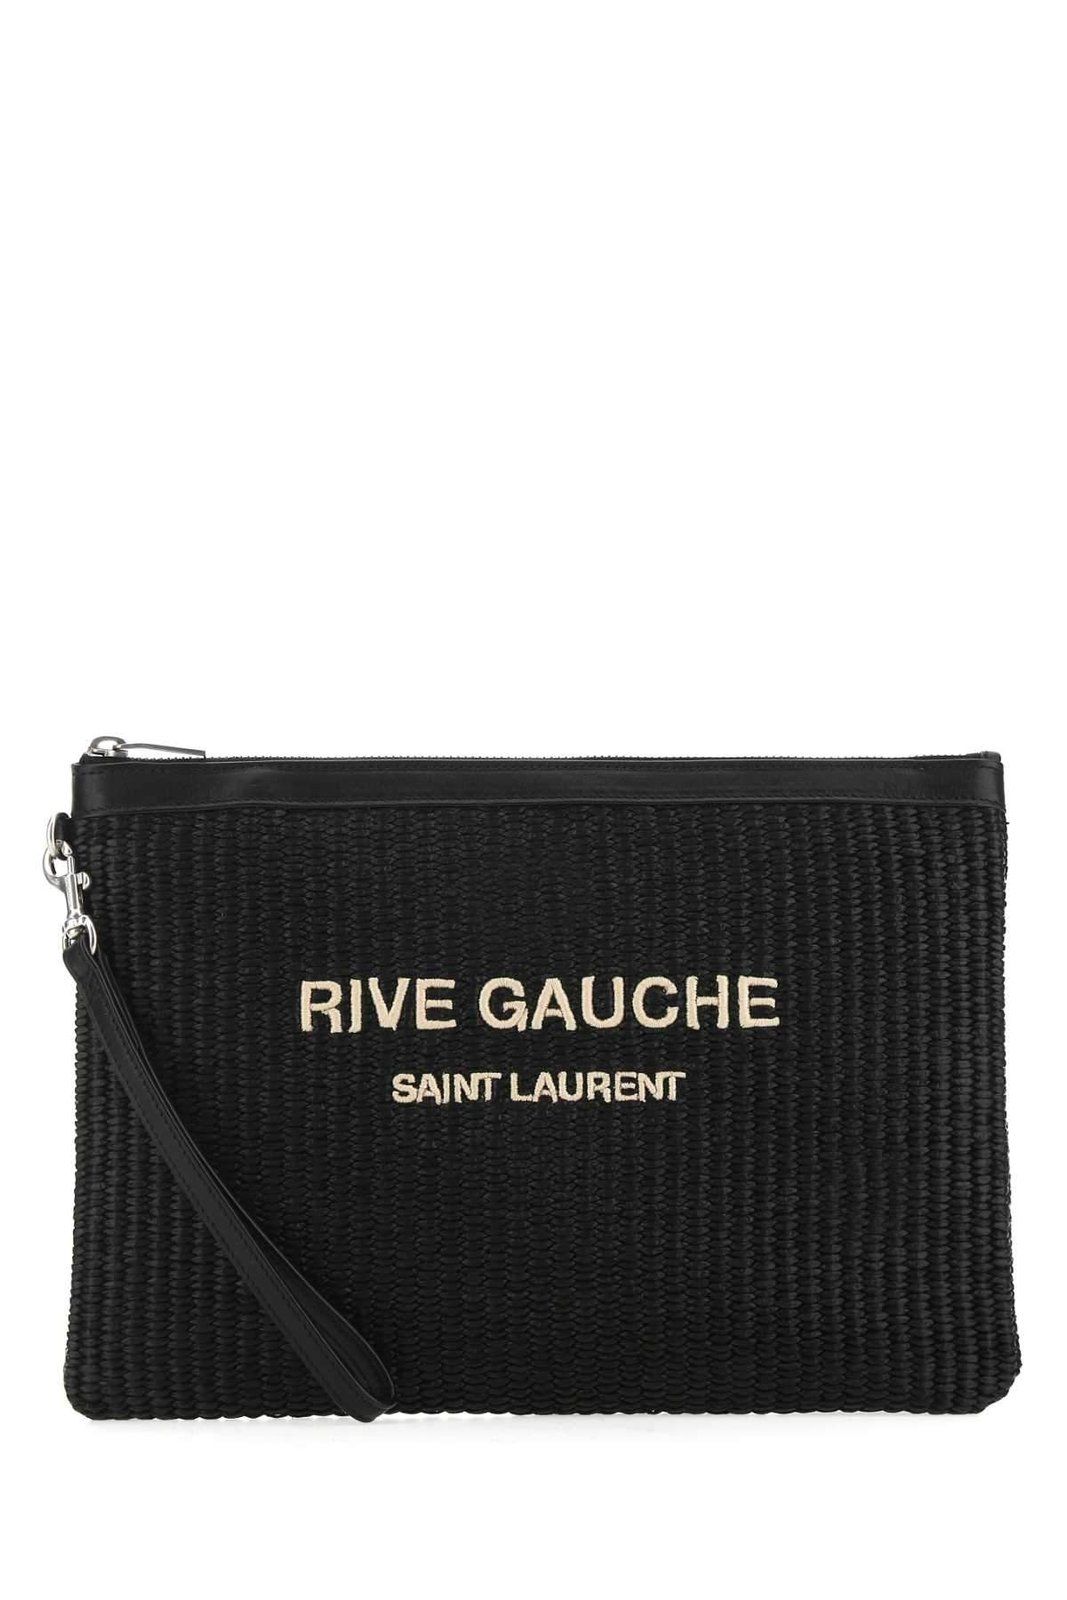 Saint Laurent Rive Gauche Zipped Pouch | Cettire Global